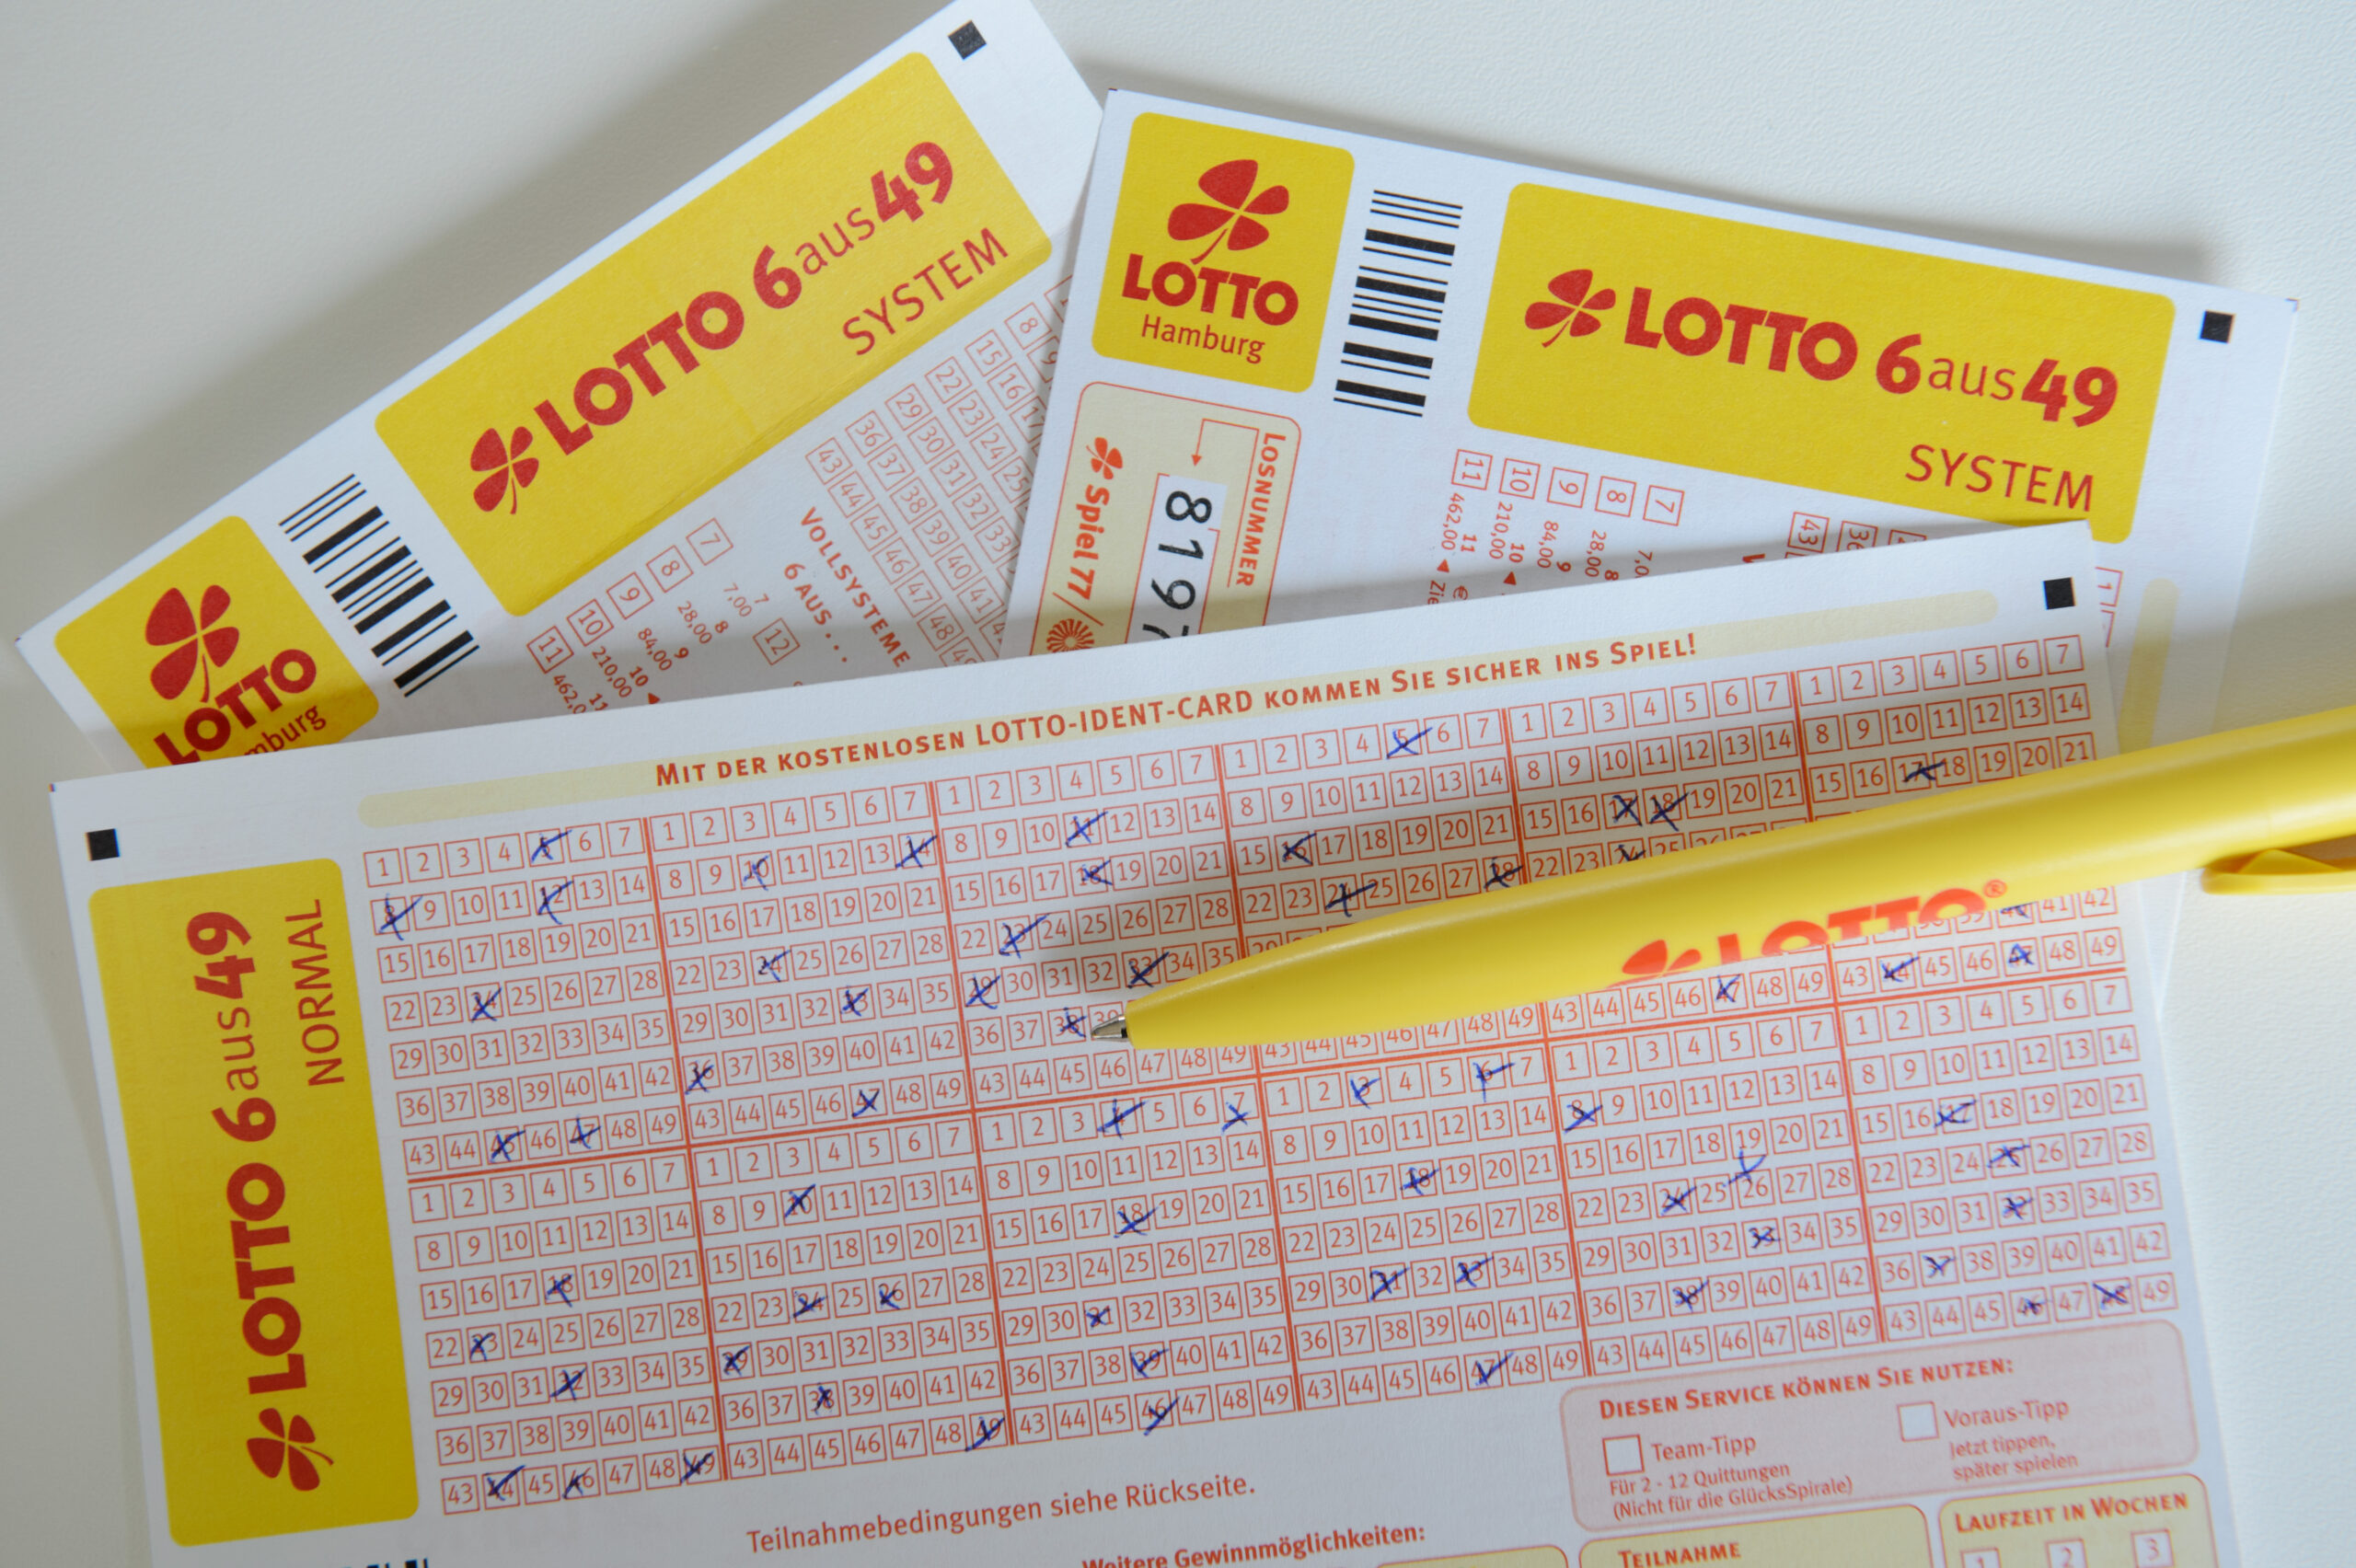 Ein Lottogewinner in Hamburg kann sich über richtig viel Geld freuen – wenn er sich denn meldet. (Symbolbild)